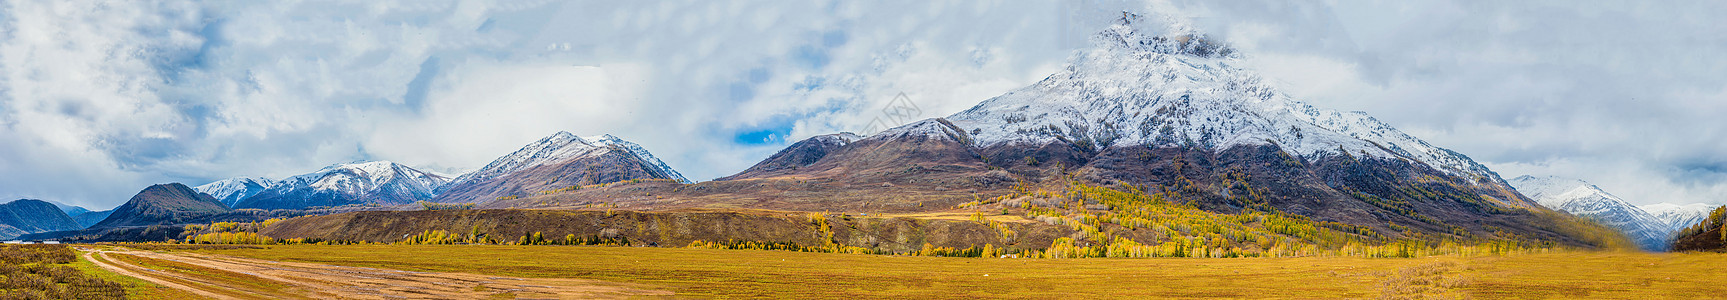 北疆秋色雪山全景图片